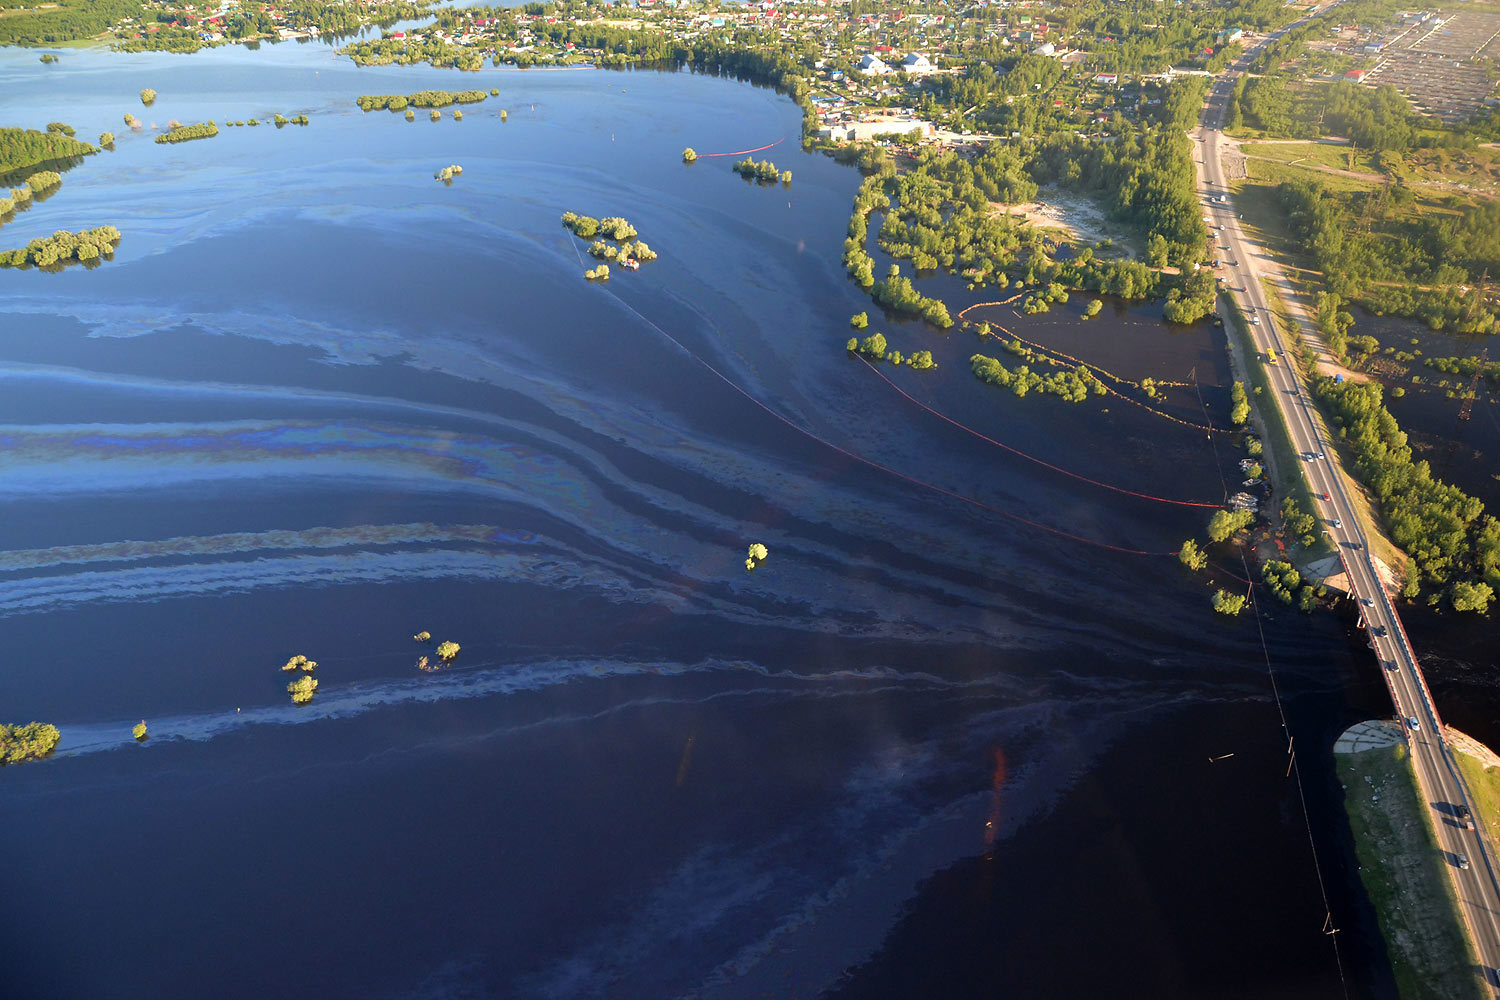  Нефтеюганск «затопило с нефтью»  - фото 1